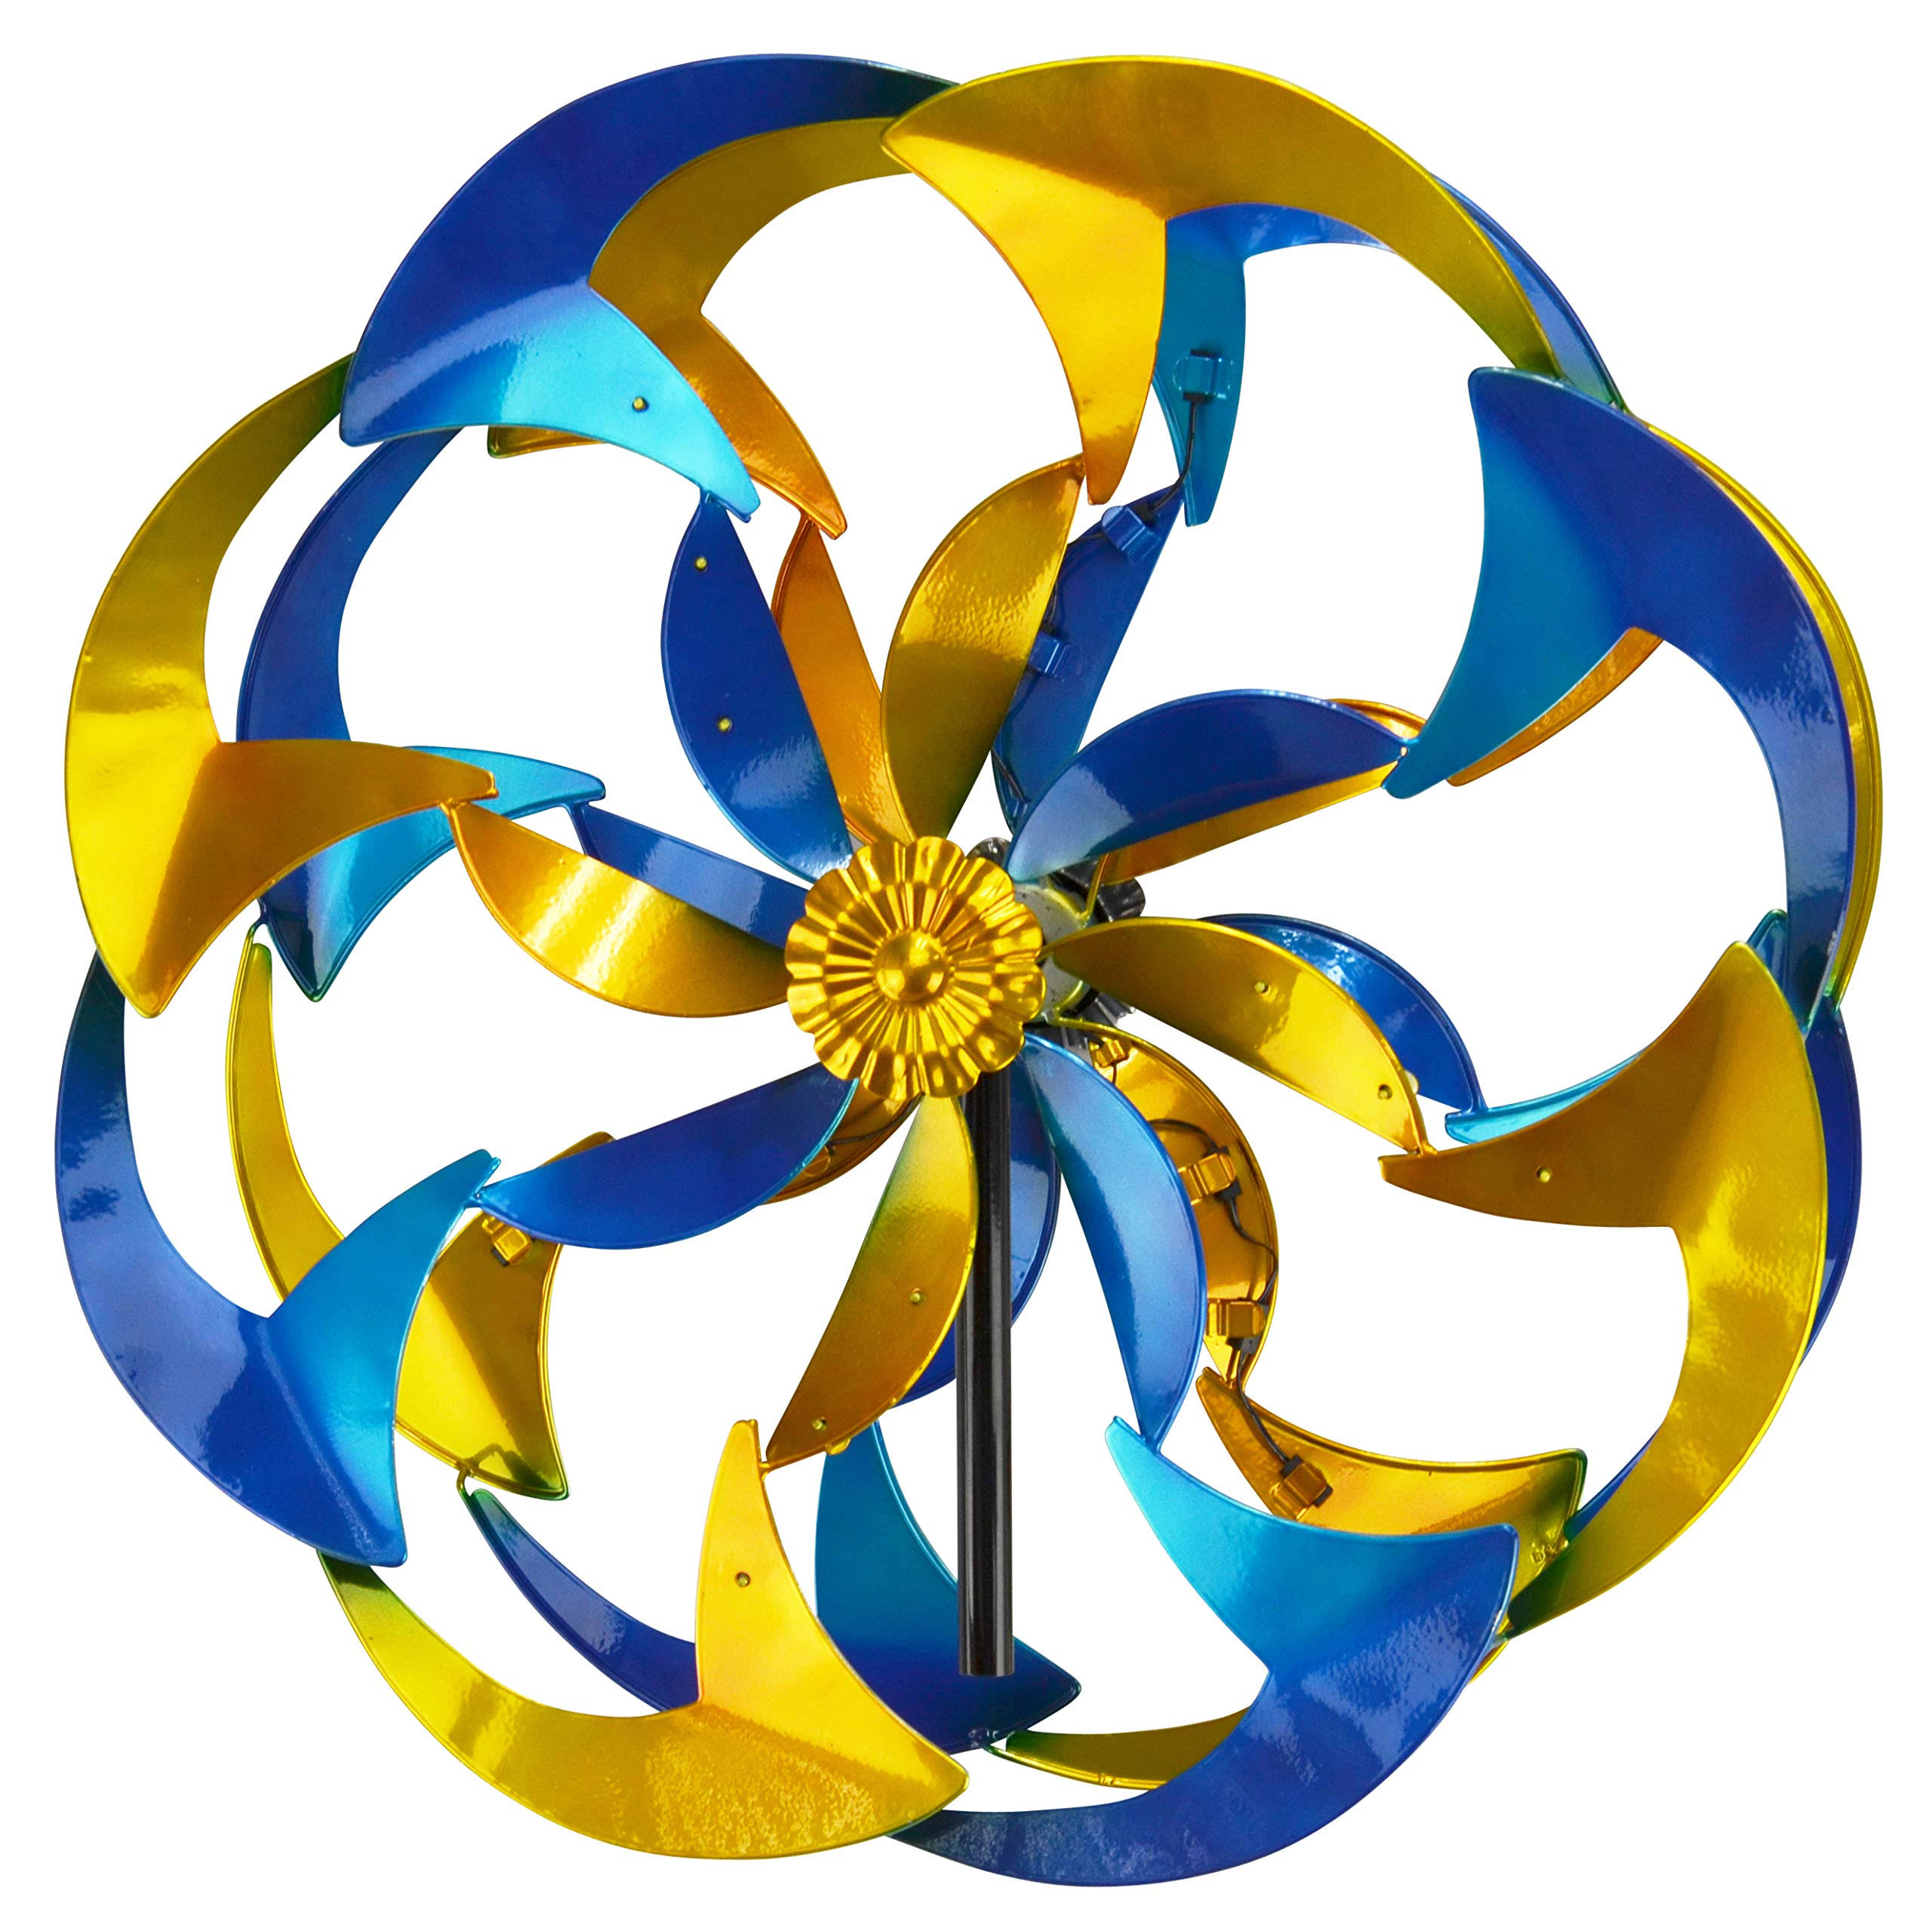 Red Carpet Studios 34475 Yellow & Blue Flower Power Spinner